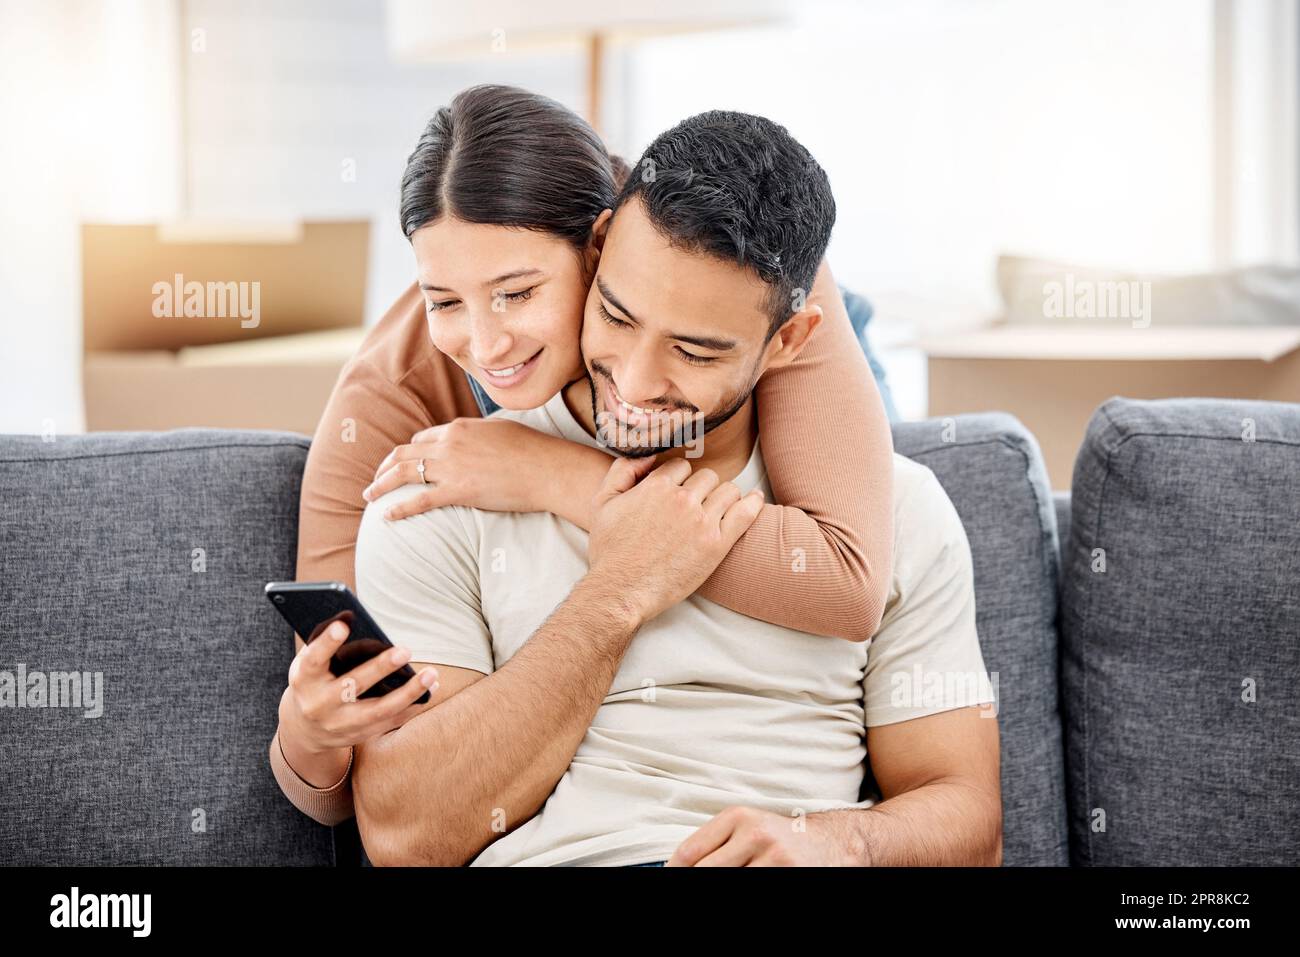 Wir können alles, was wir brauchen, online einkaufen. Aufnahme eines jungen Paares, das ein Mobiltelefon benutzte, während es in ein Haus umzog. Stockfoto